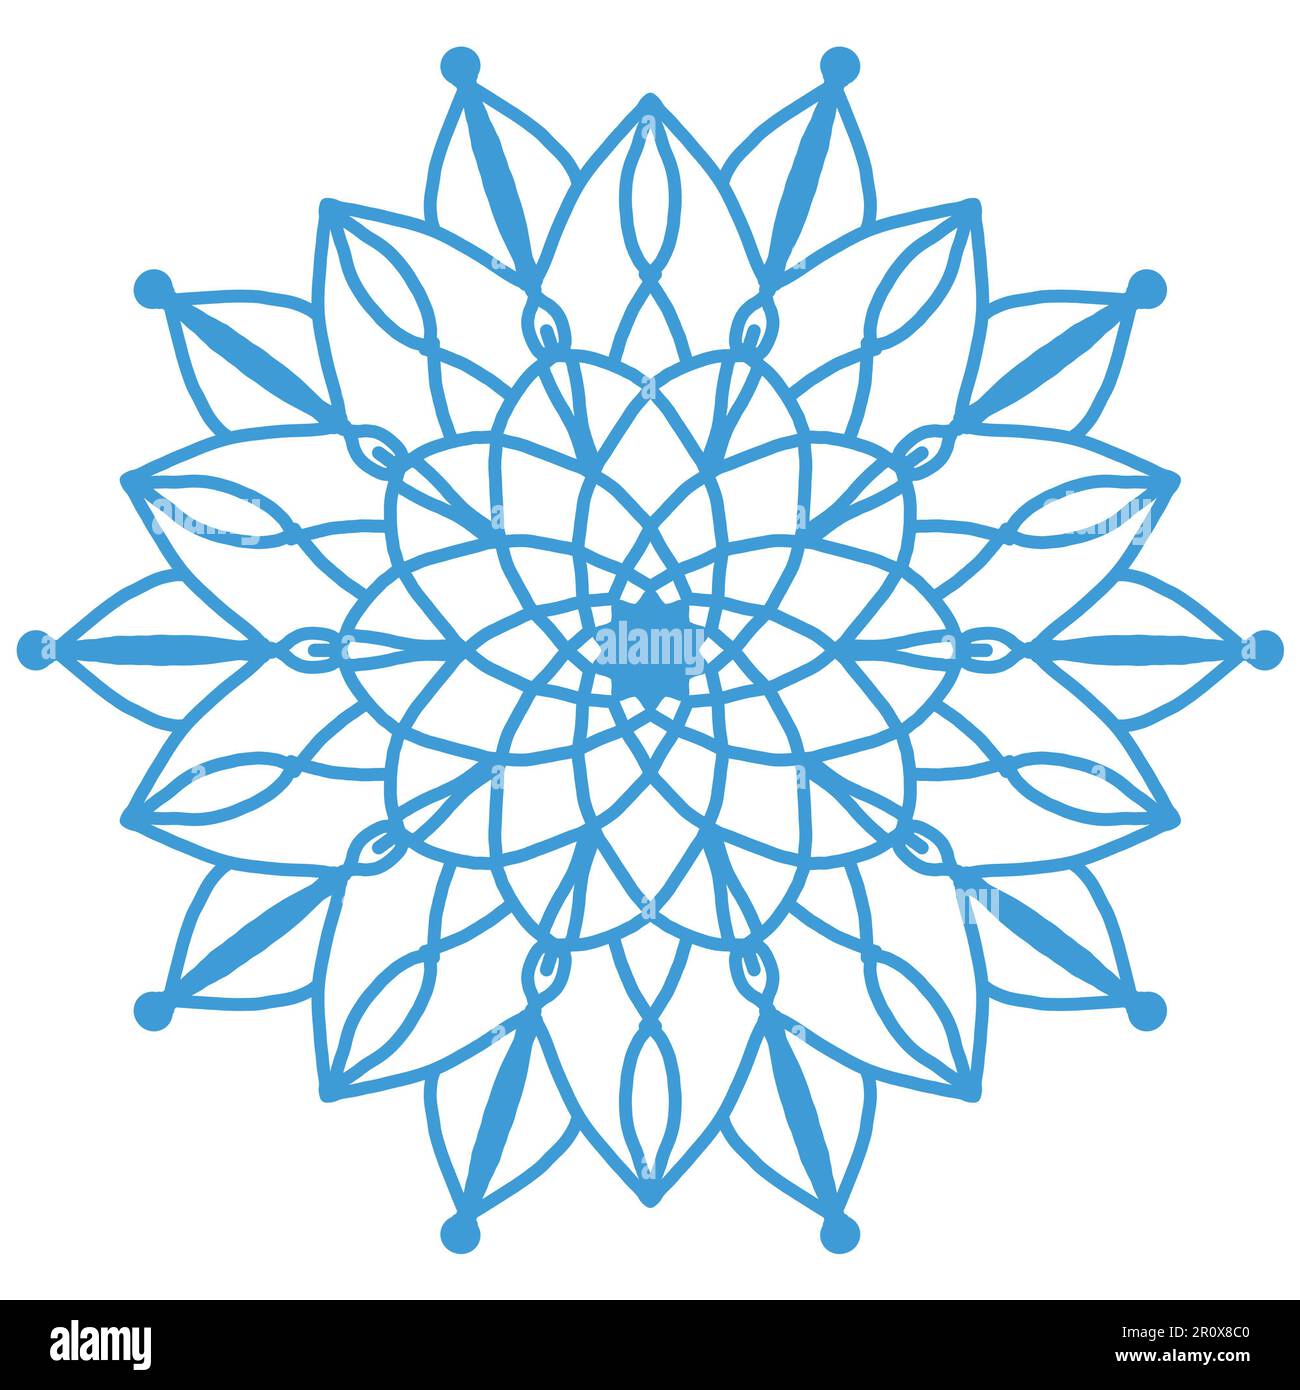 Abstraktes Mandala-Blumendesign, Mandala-Kunstdesign, das Sie als Hintergrund, Design usw. verwenden können Dieses Mandala hat ein Blumenmotiv. Stockfoto